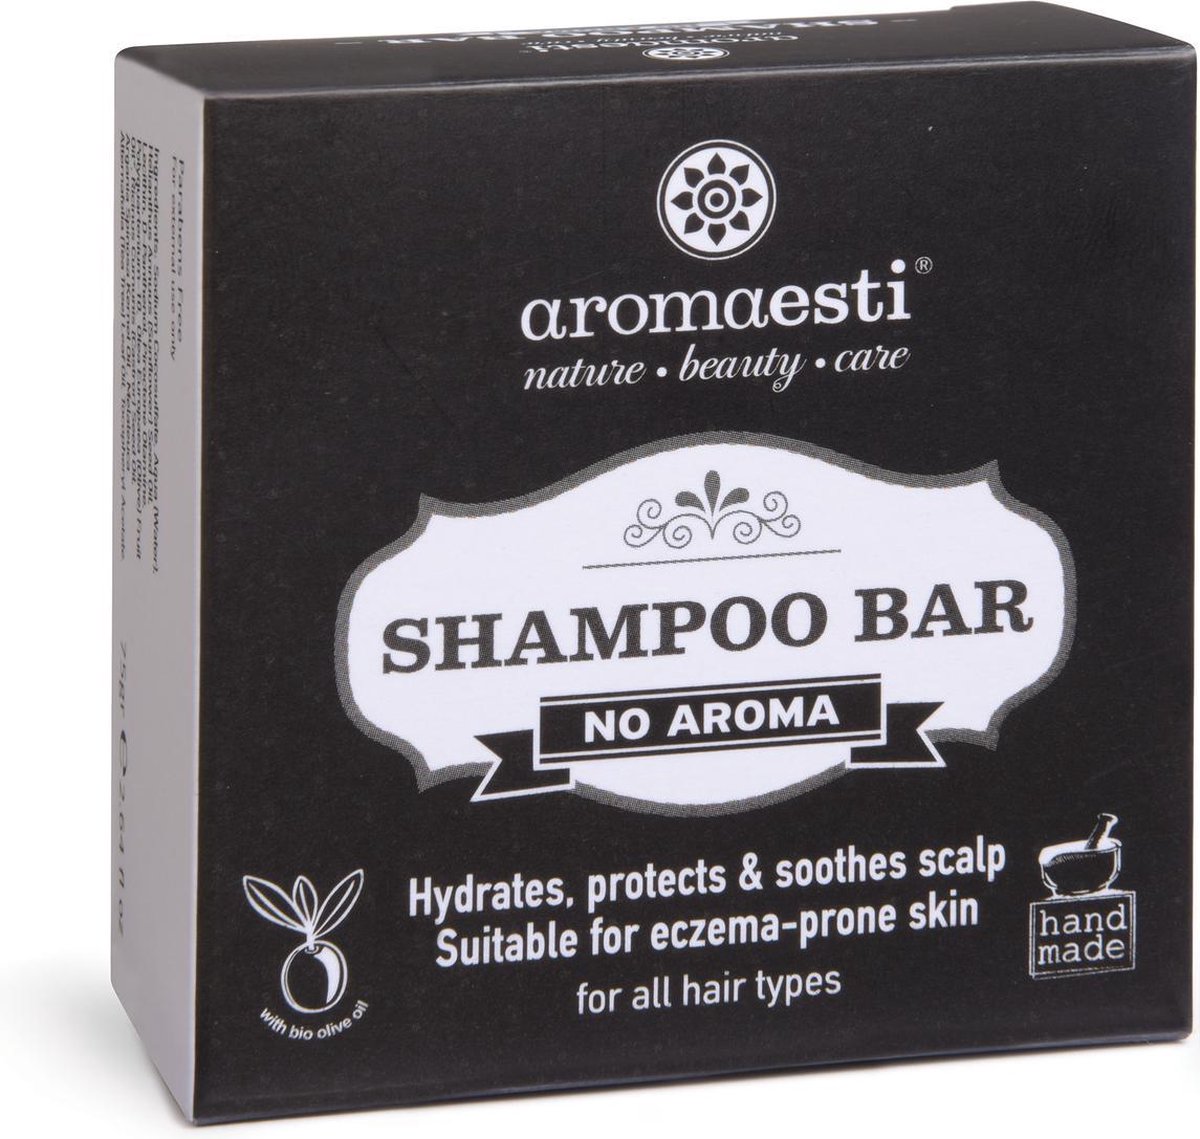 Aromaesti Shampoo Bar No aroma - shampoo zonder parfum - eczeem - psoriasis - zero waste - solid shampoo - vegan - duurzaam - biologisch - diervriendelijk - 60 gram